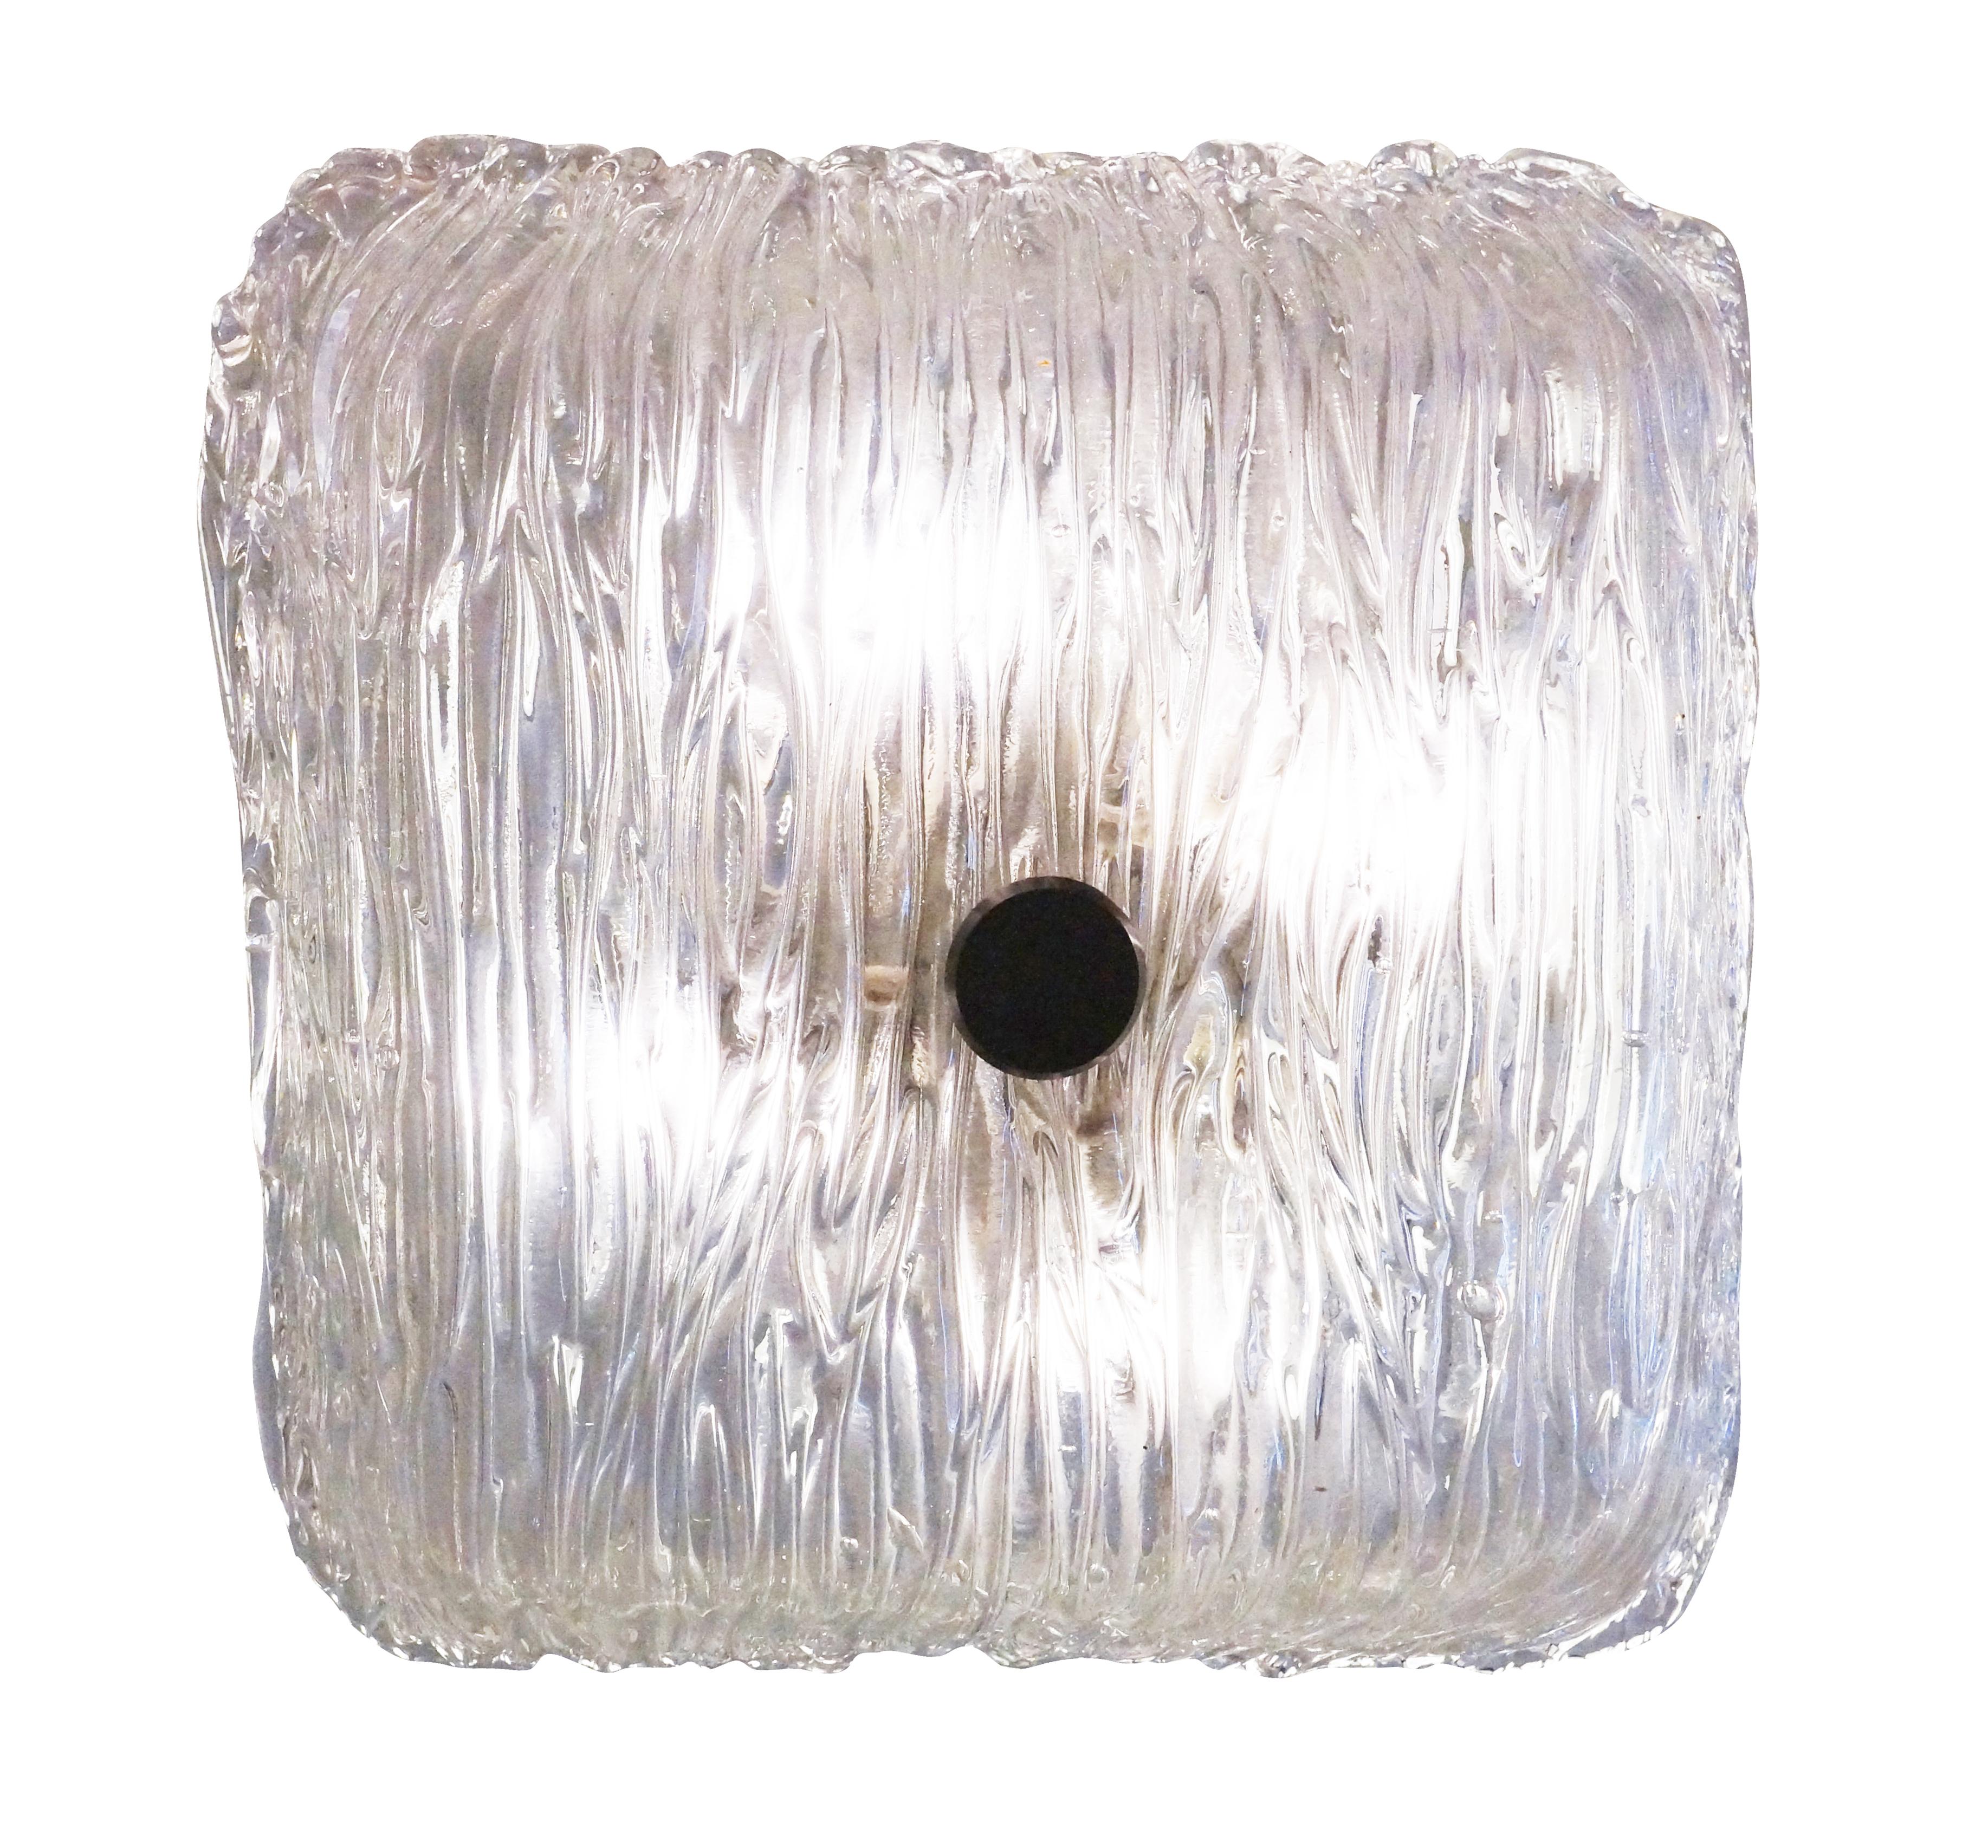 Italian Textured Square Murano Glass Flushmount by Toni Zuccheri for Venini For Sale